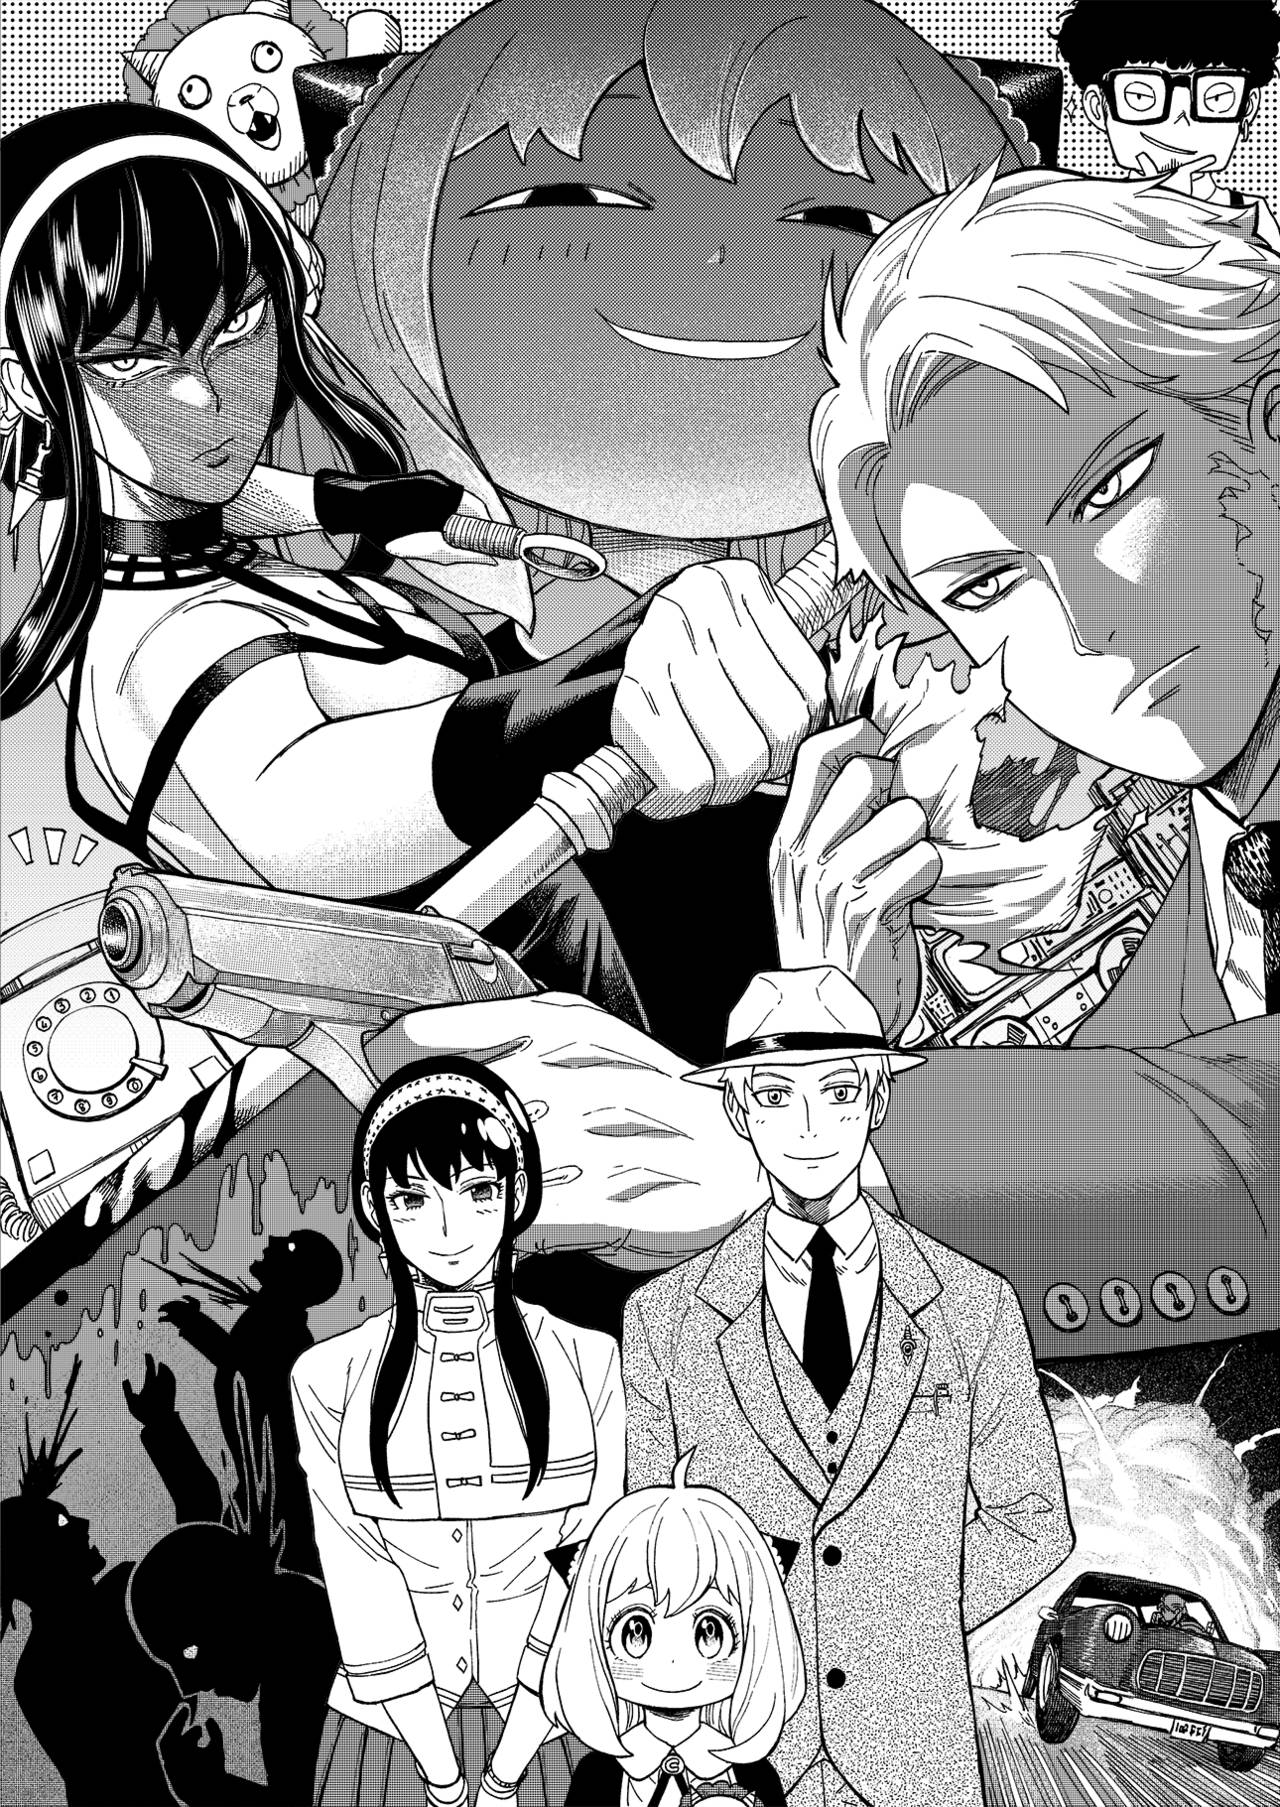 Spy X Family Greyscale Manga Background